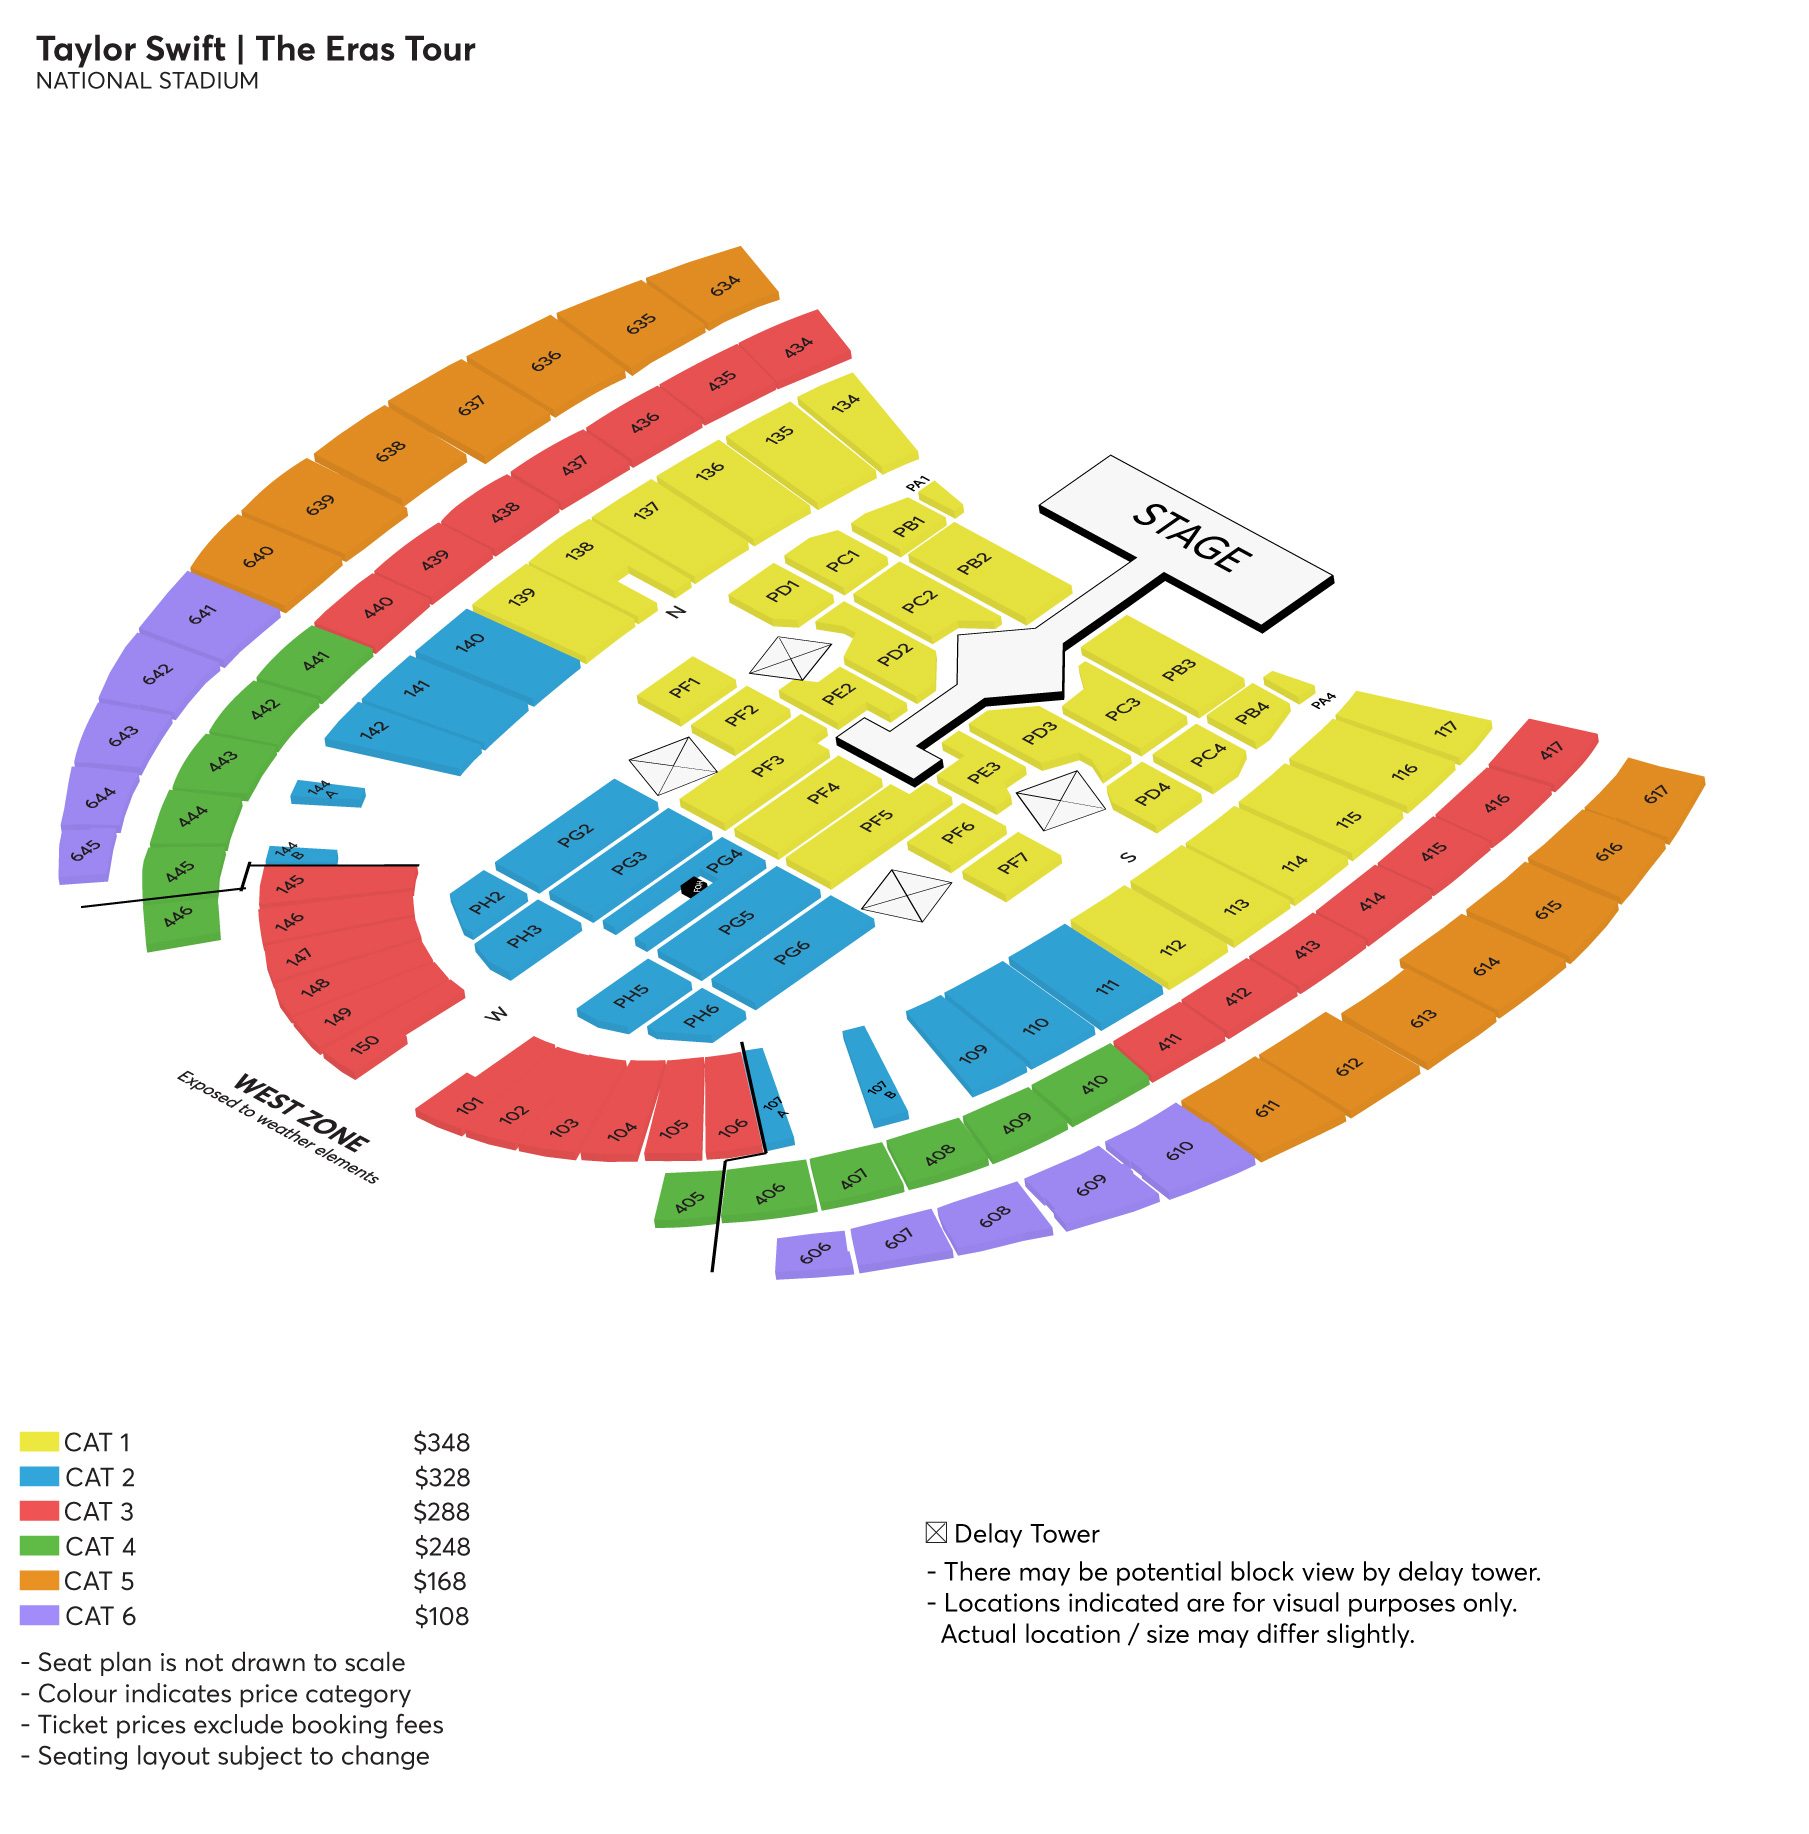 Taylor Swift National Stadium Seating Plan Image to u